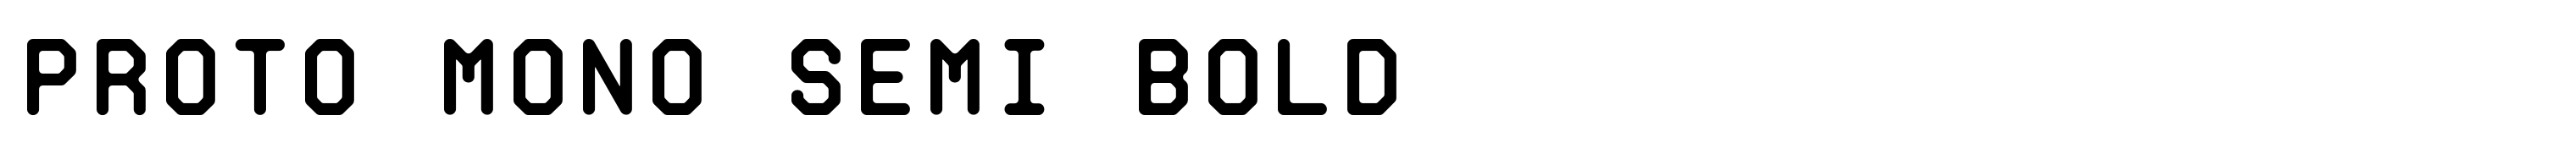 Proto Mono Semi Bold